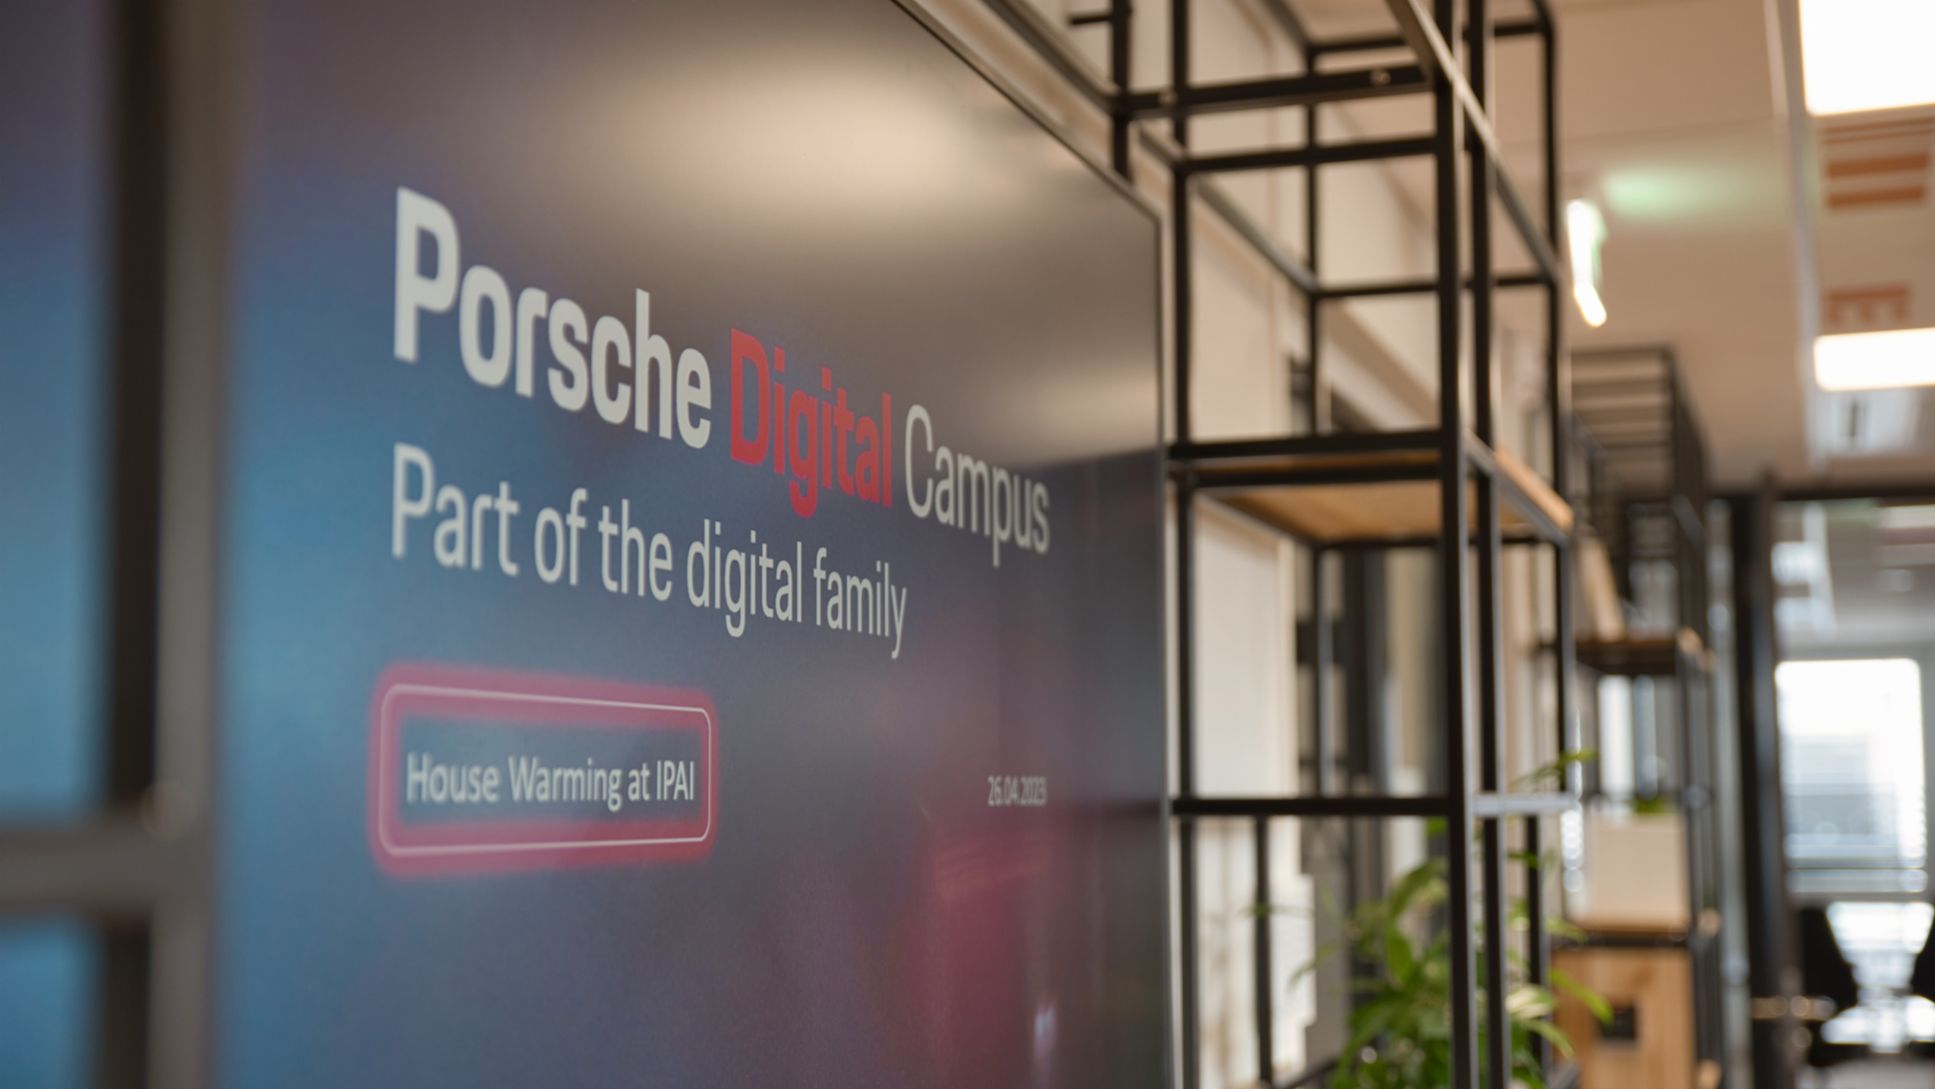 Porsche Digital Campus, 2023, Porsche AG